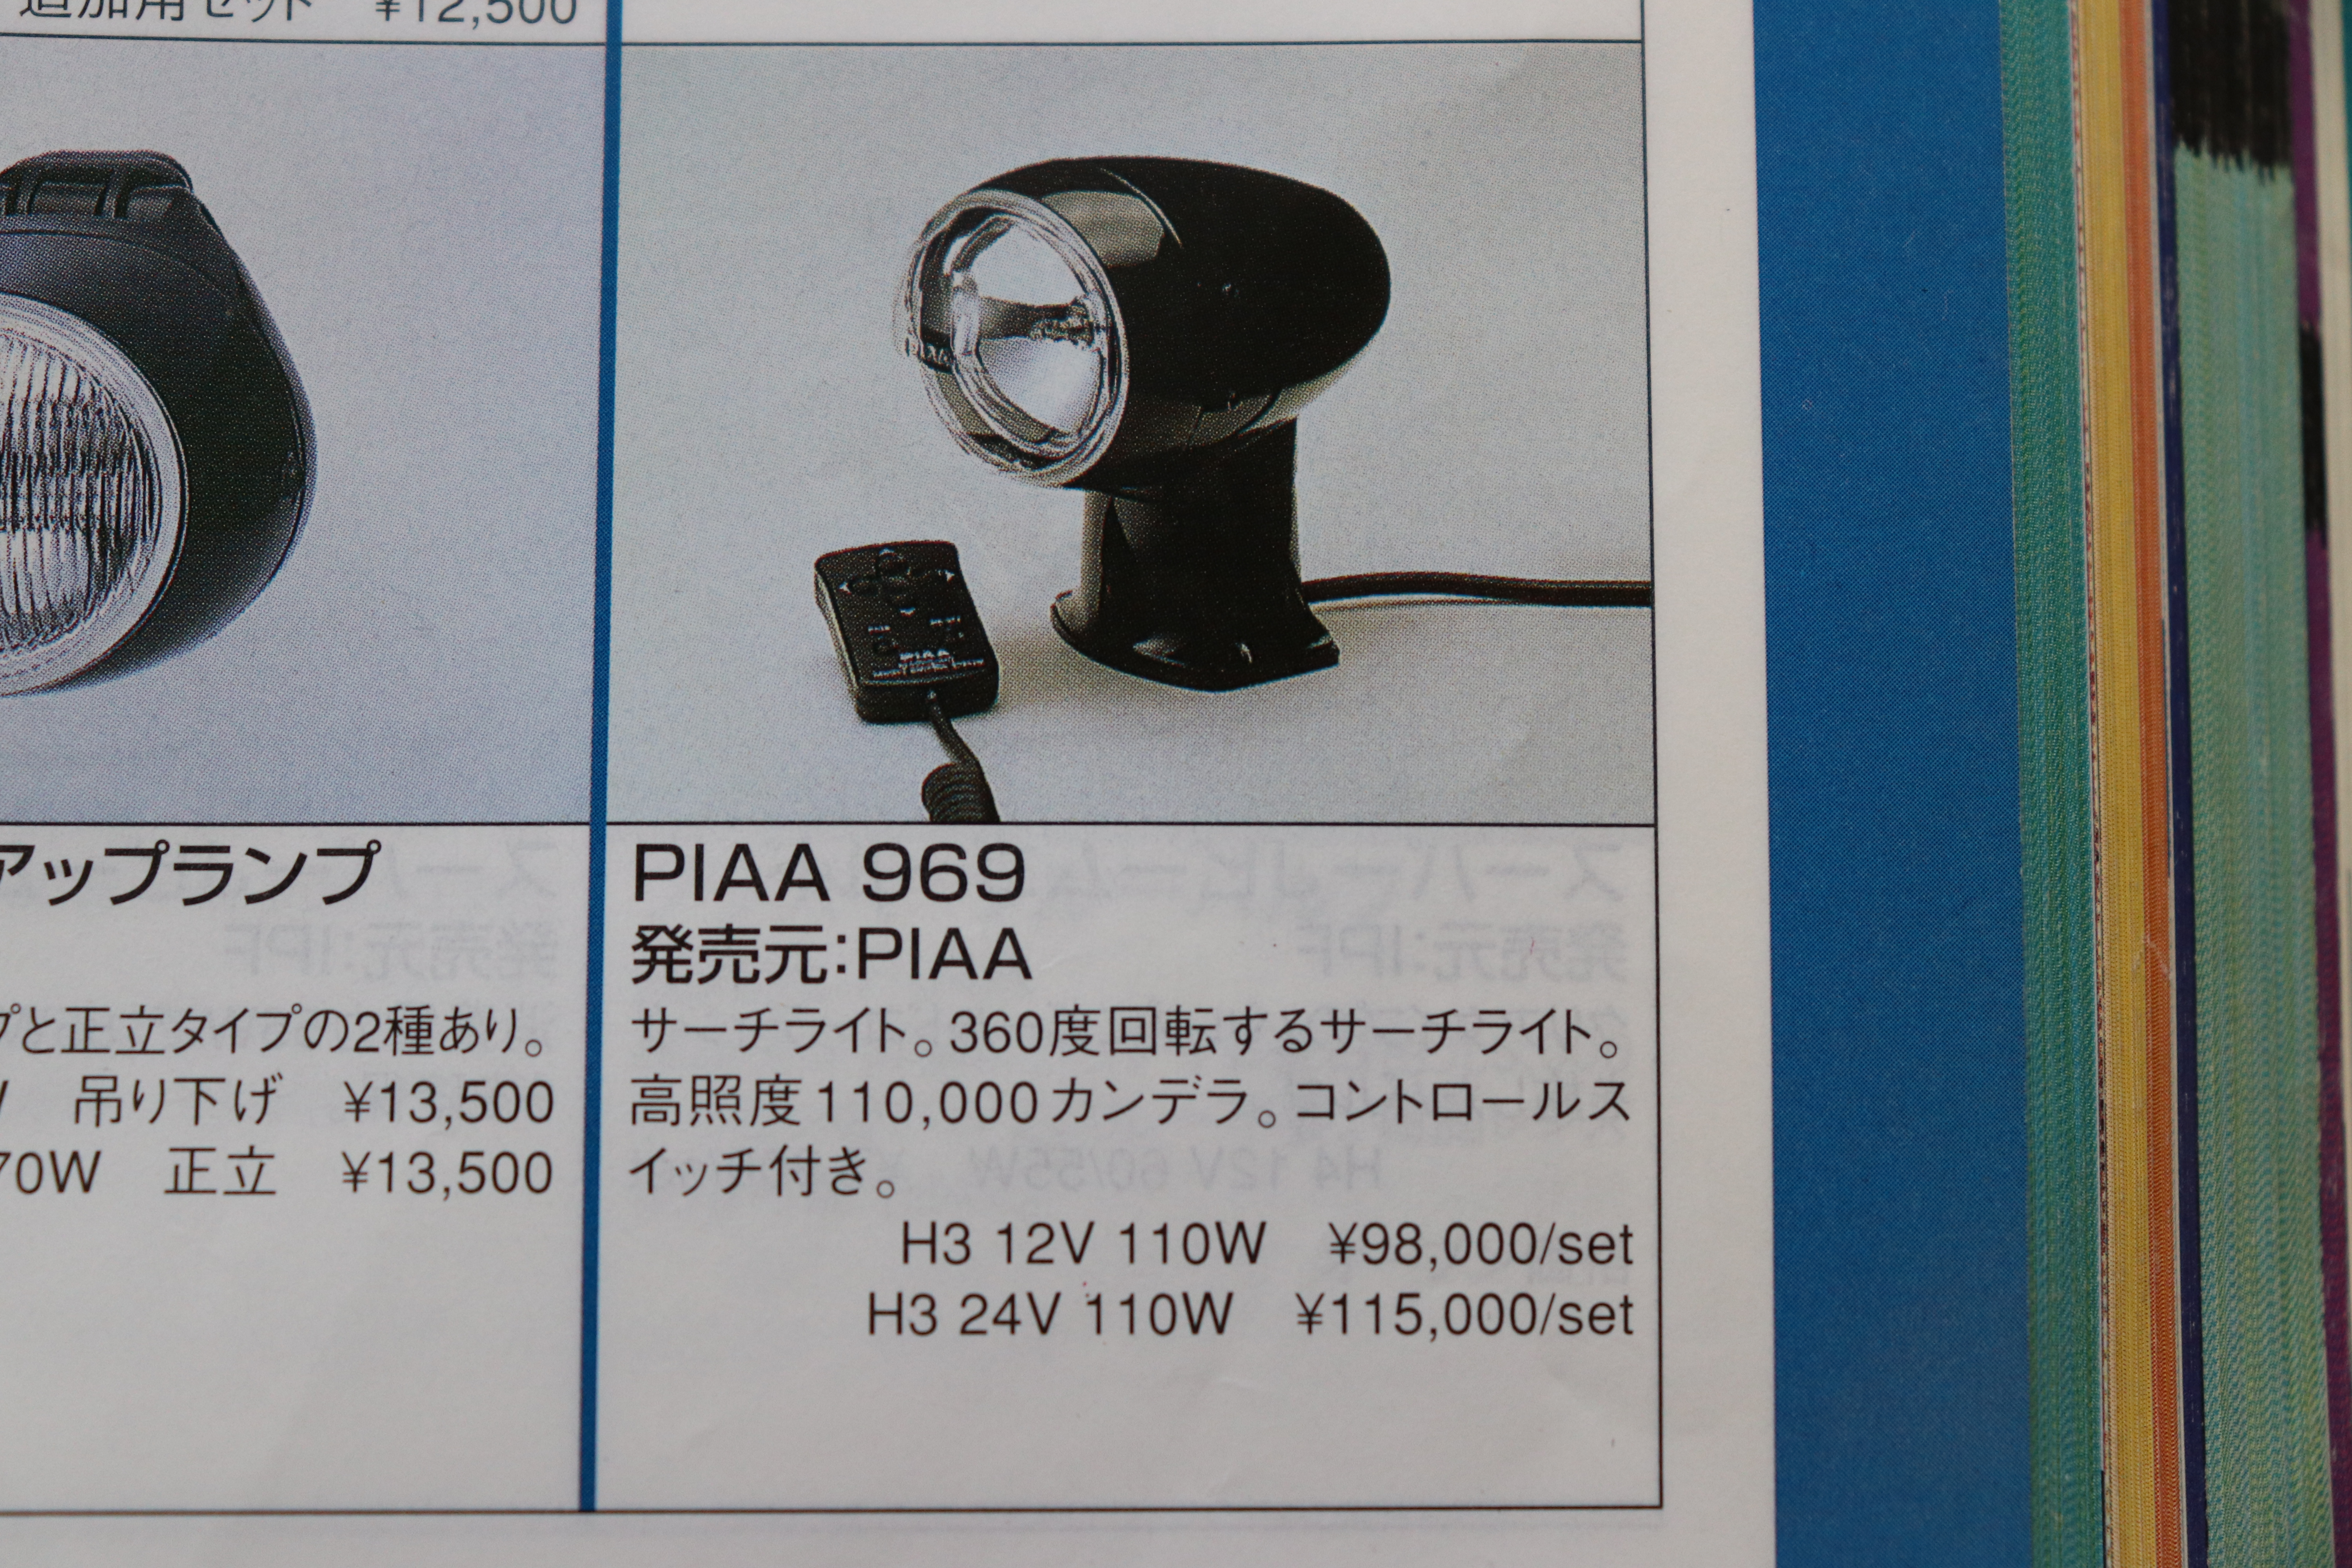 PIAA 969 リモコンサーチライト H3 24V 110W 新品 | パーツショップADDICT